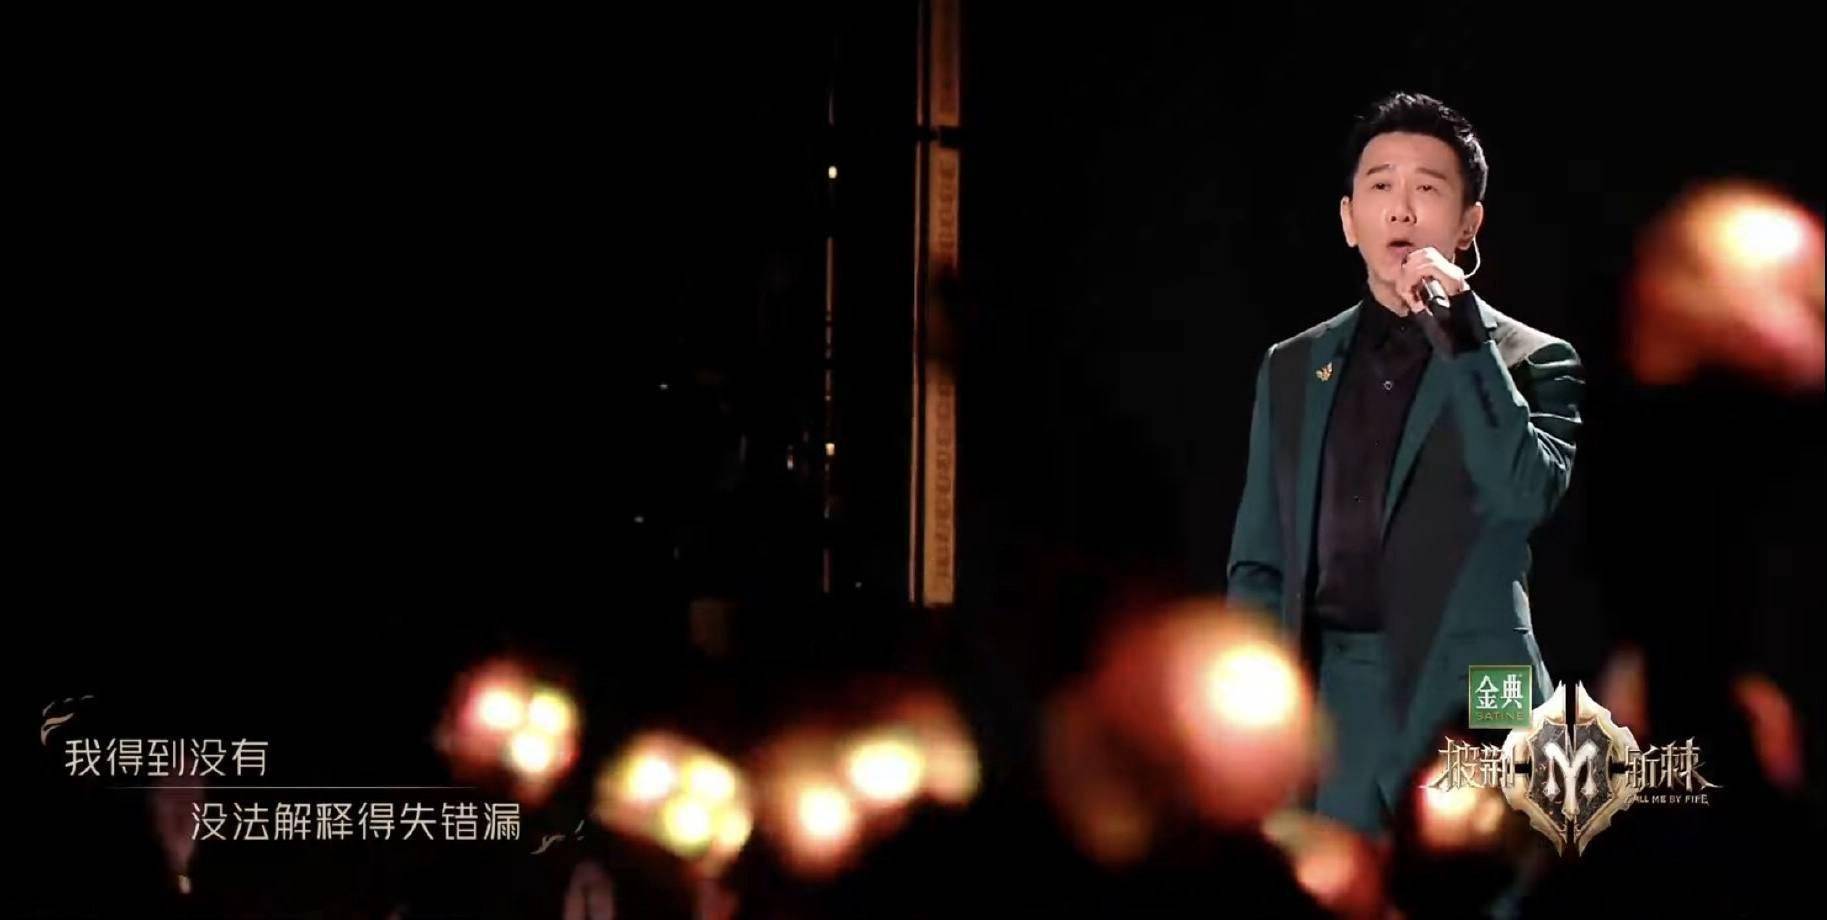 知名港星温兆伦自曝参加《披荆斩棘2》原因,承认未来不排除与TVB合作